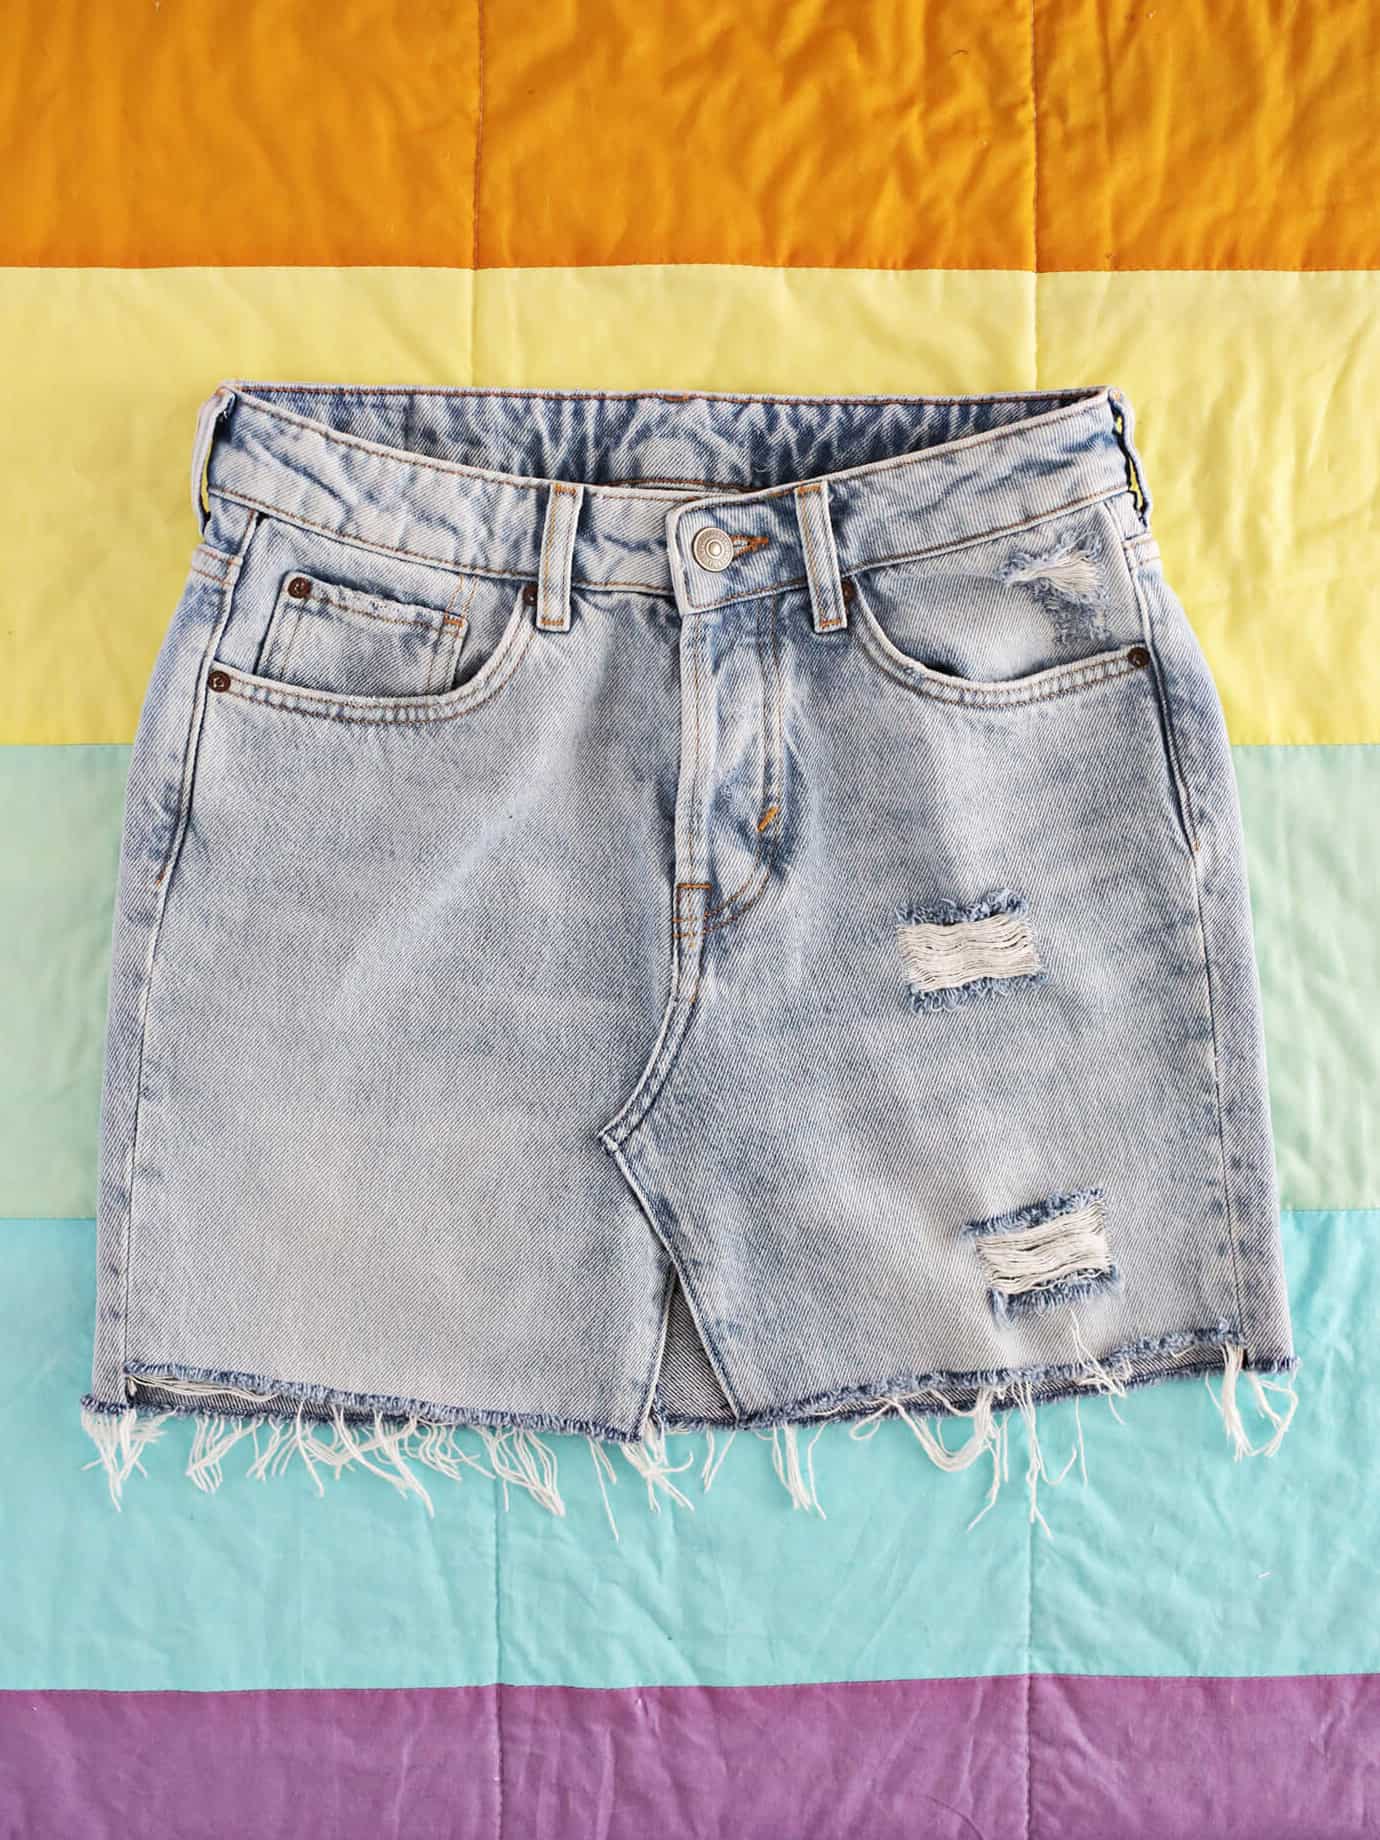 denim skirt from jeans